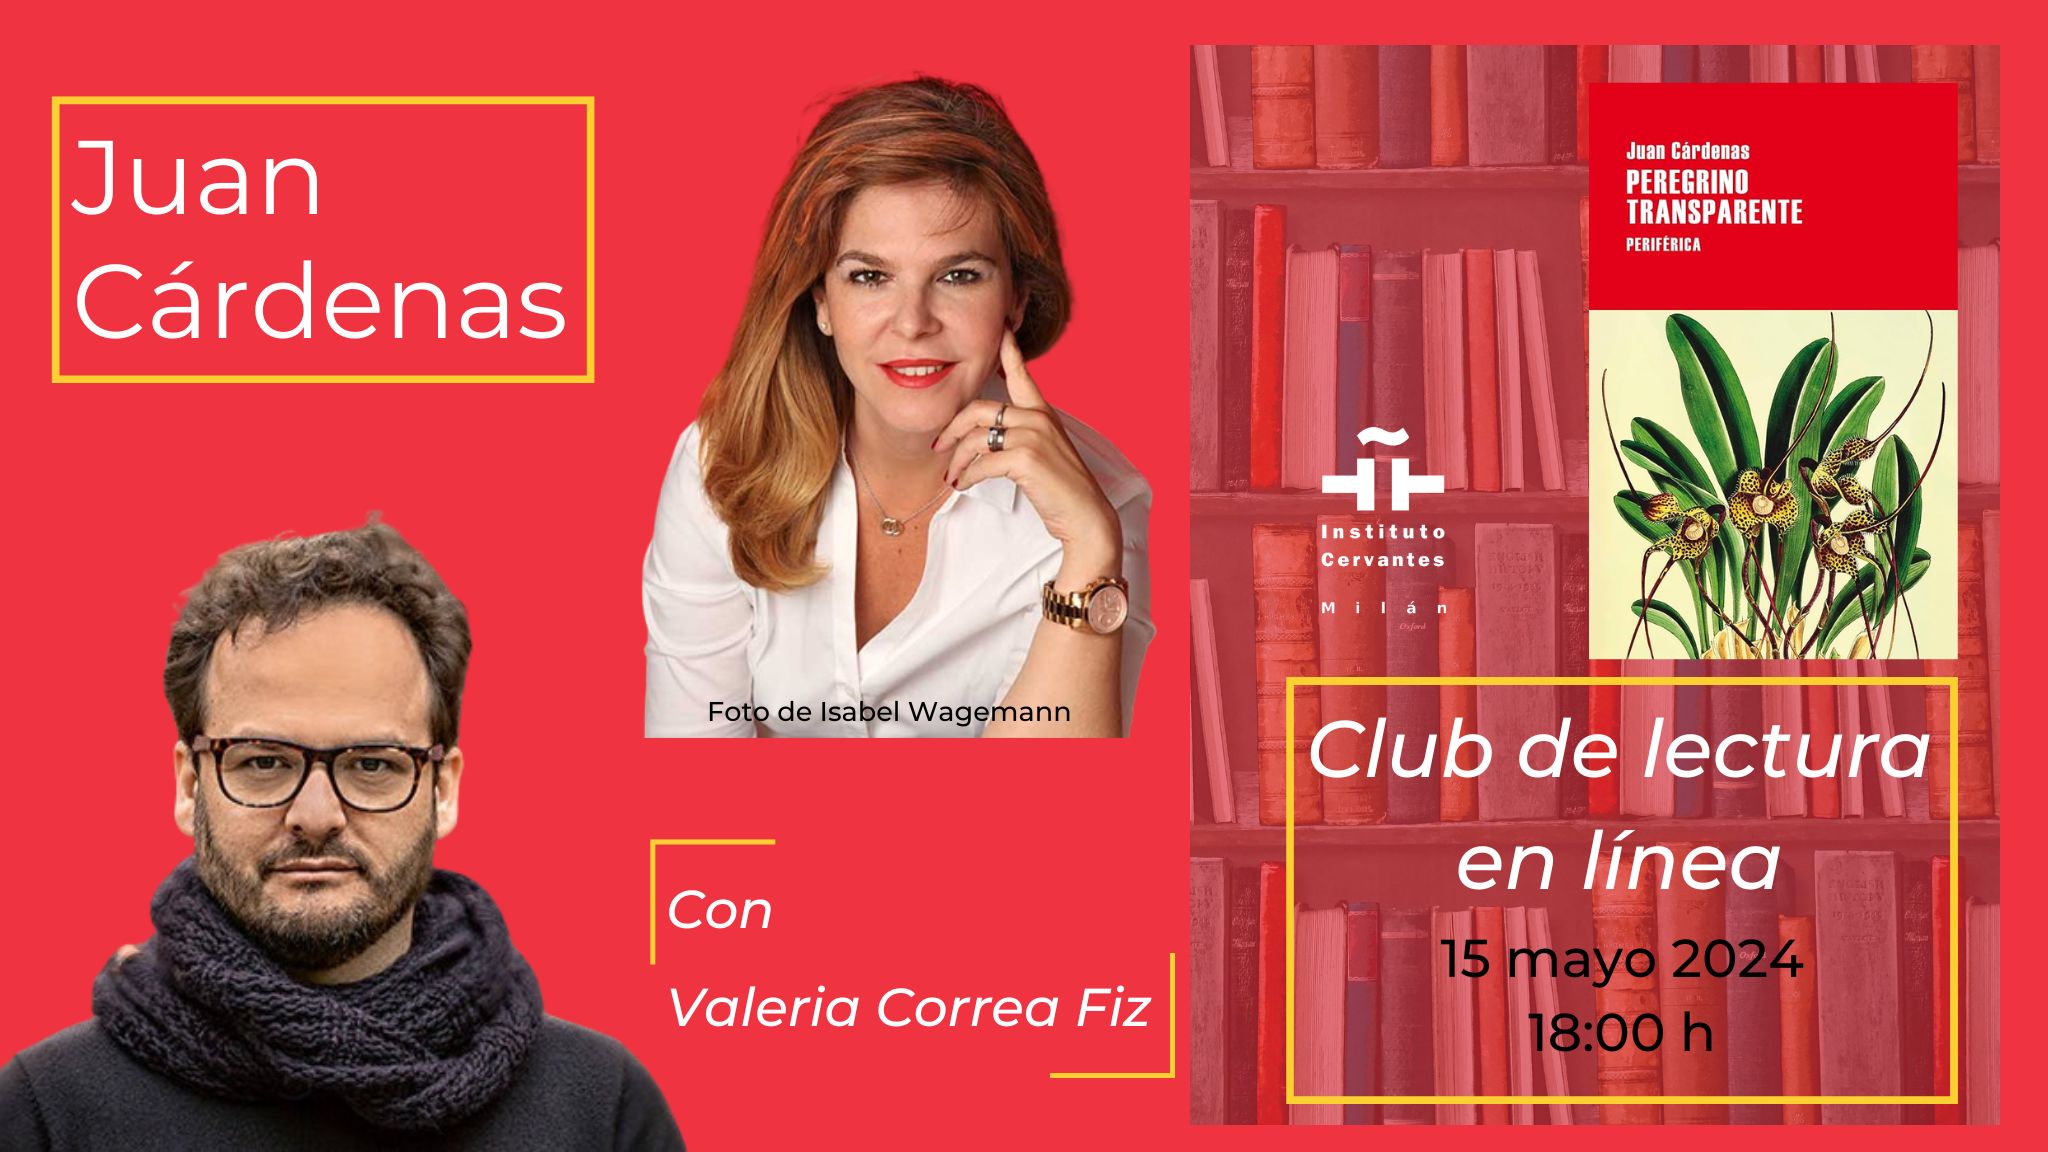 Club di lettura su "Peregrino transparente" con Juan Cárdenas